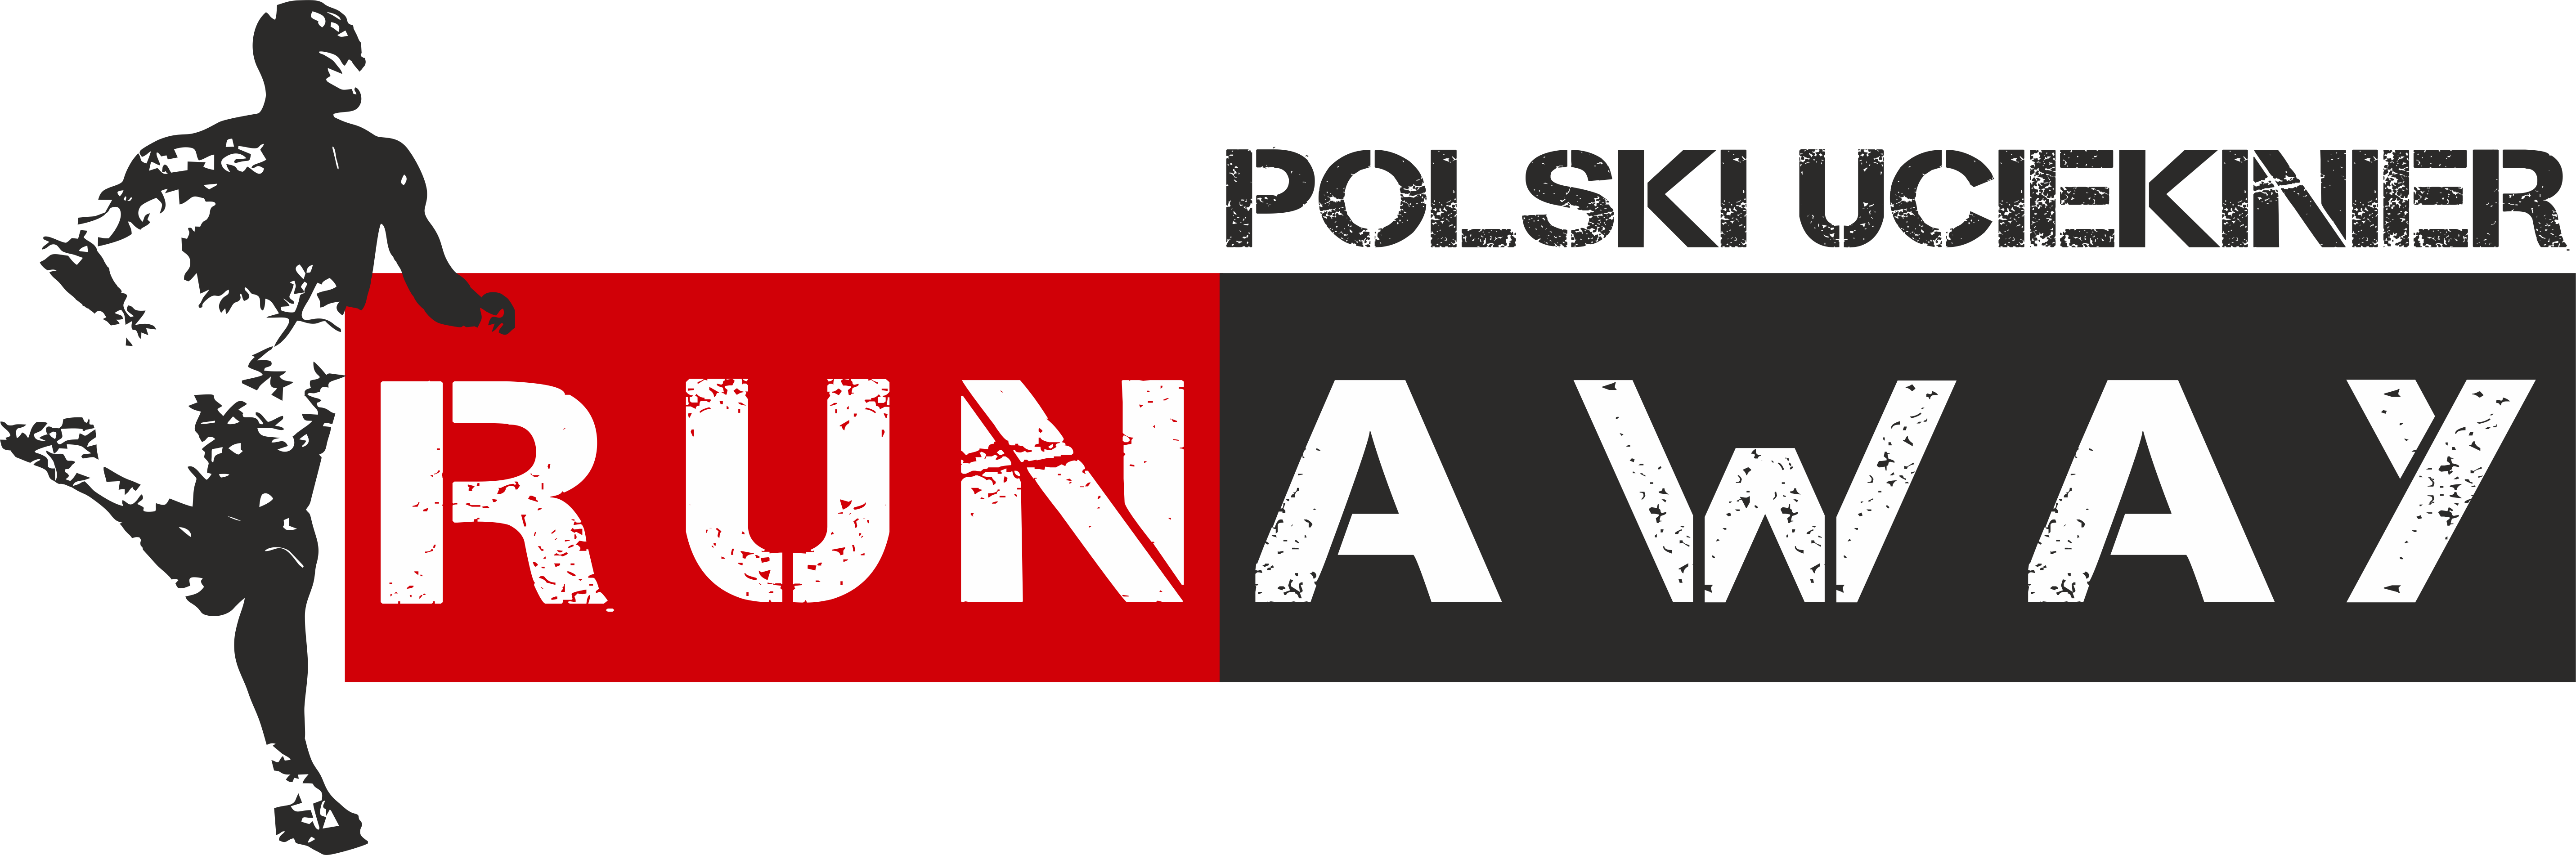 runaway polski uciekinier 